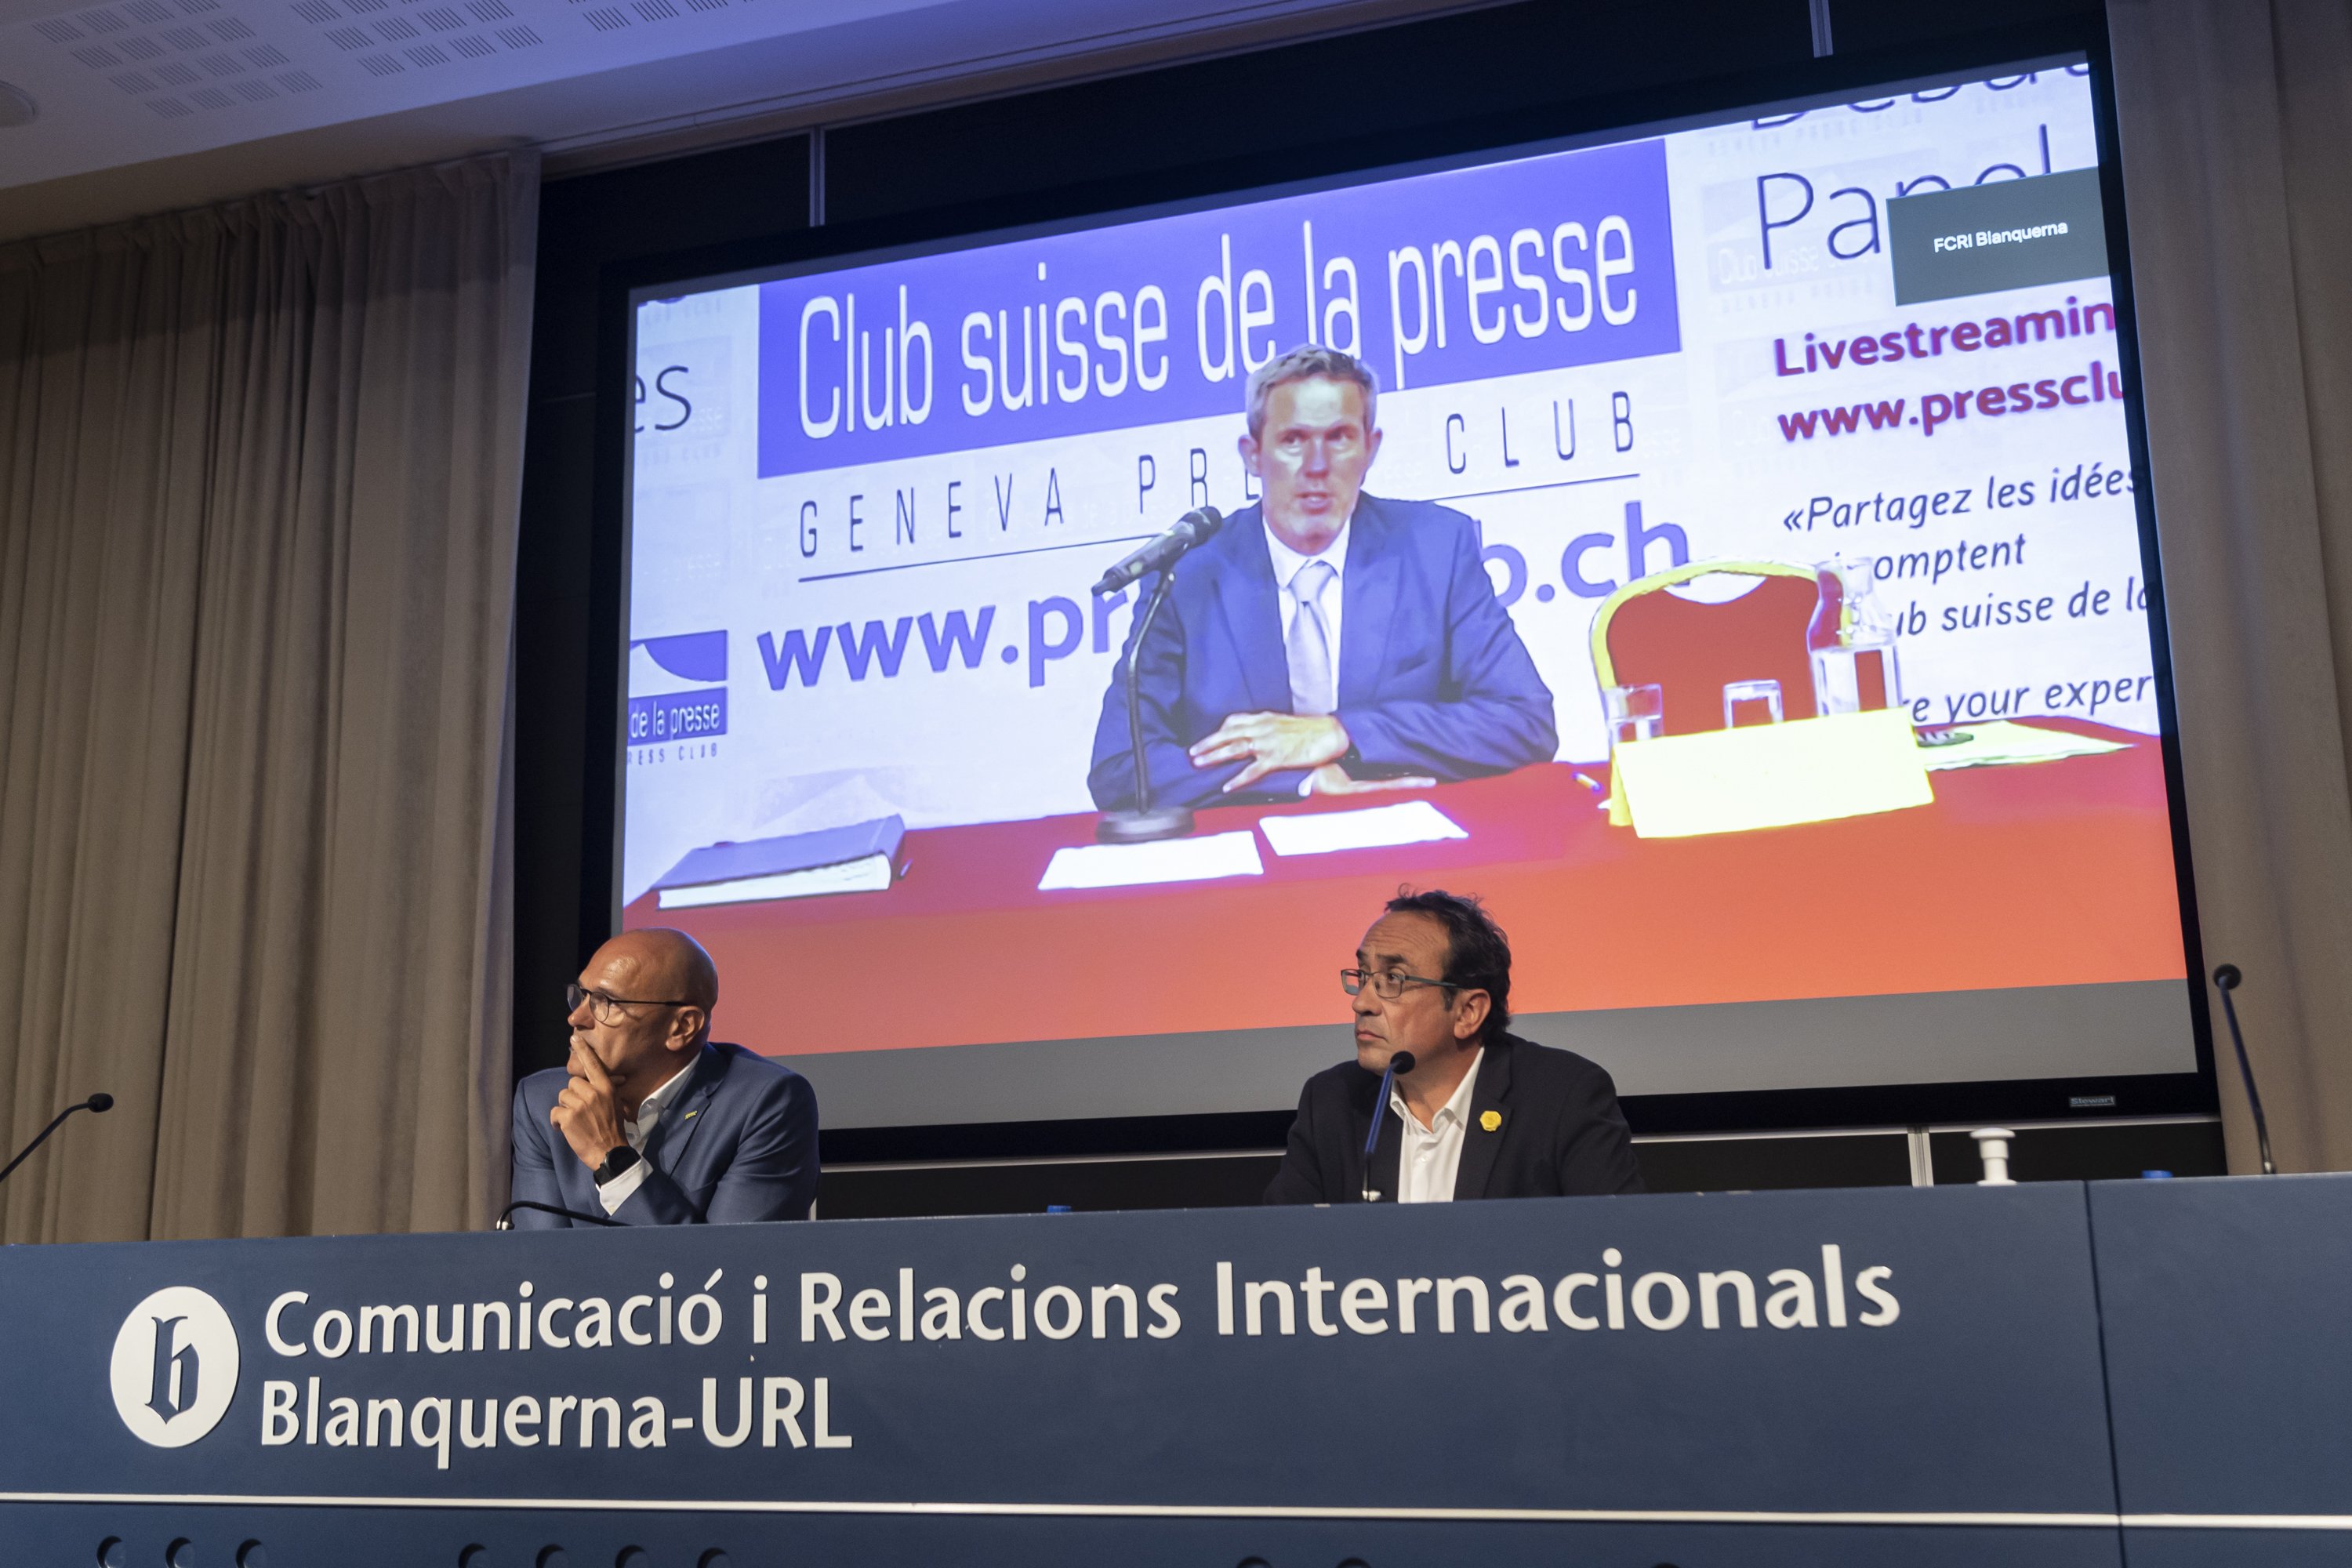 Romeva y Rull en la rueda de prensa El Comité de Derechos Humanos de las Naciones Unidas condena la represión española contra el independentismo - Montse Giralt